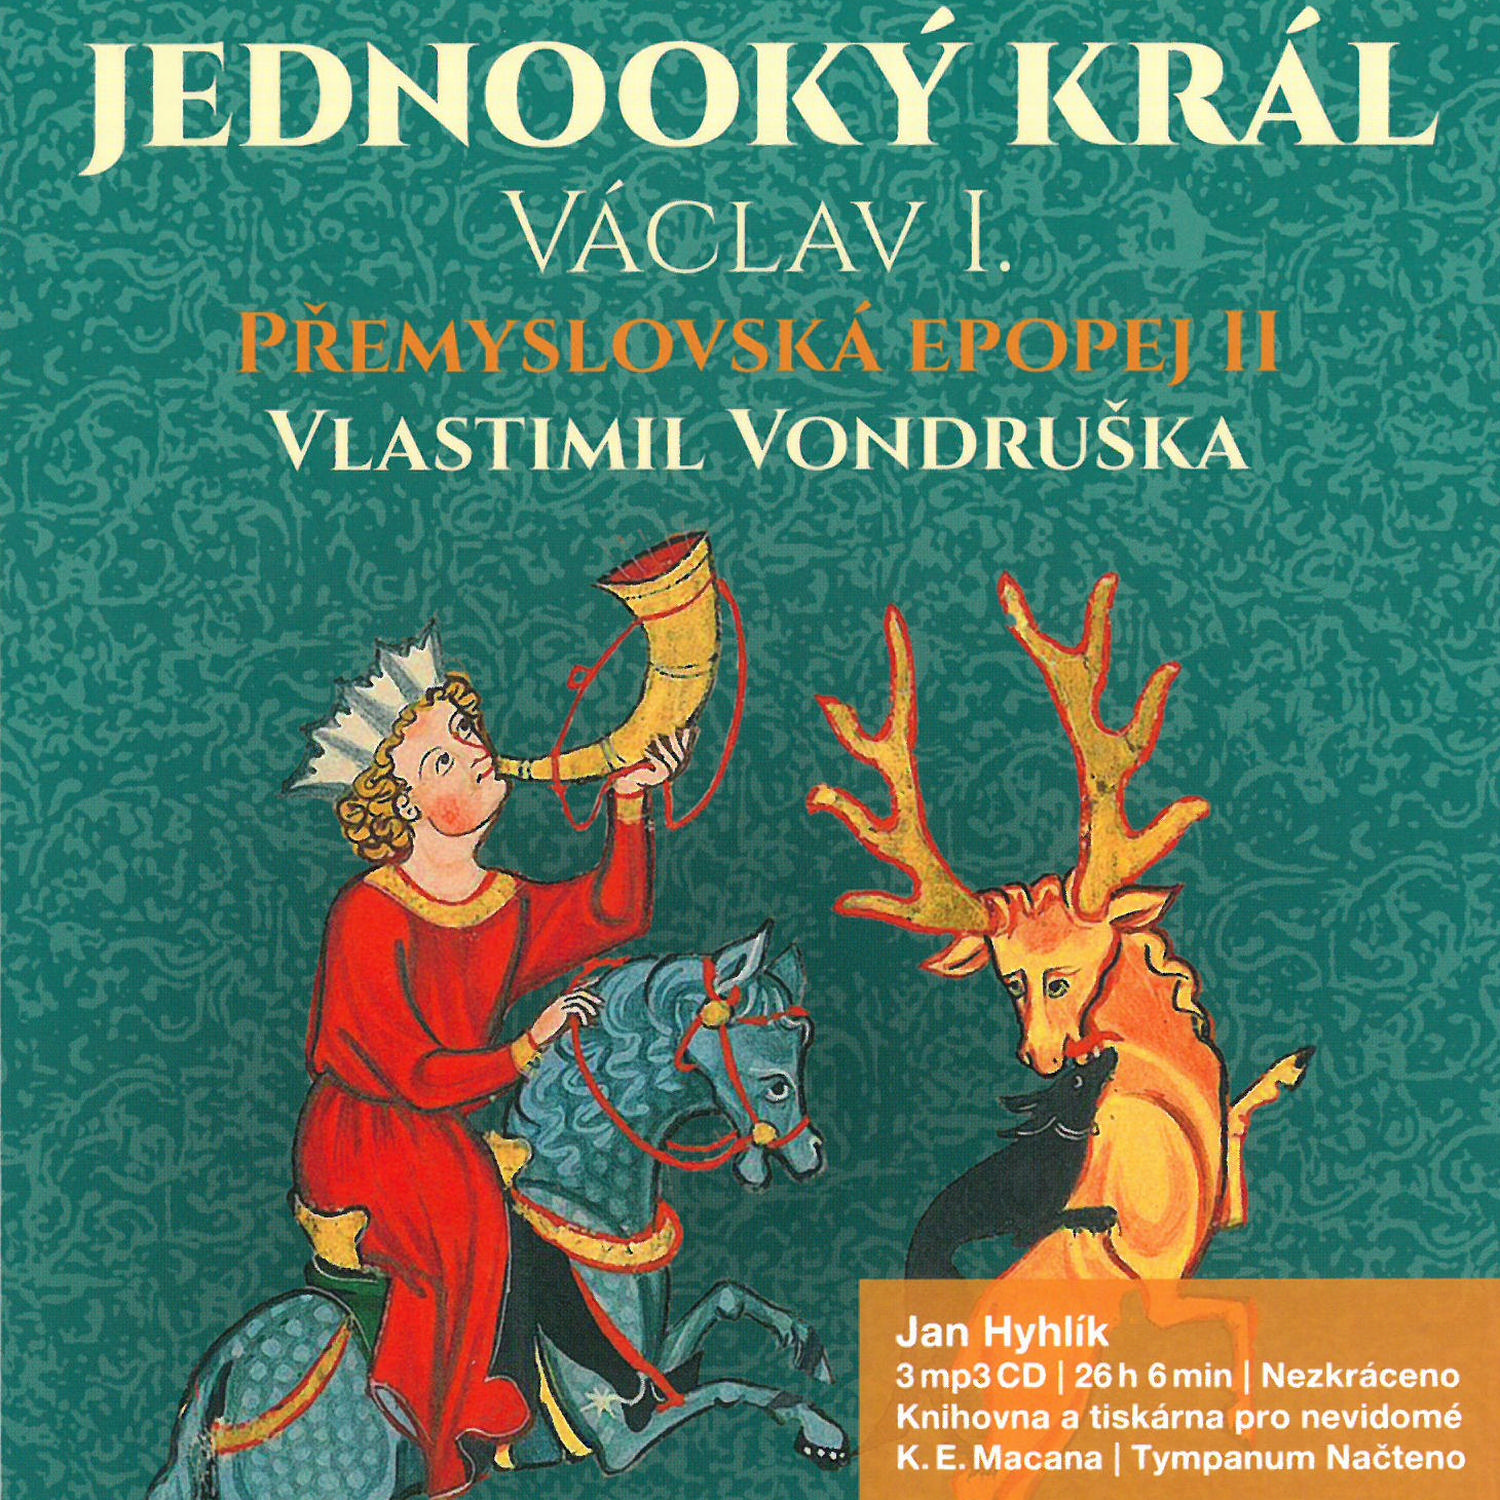 CD Shop - HYHLIK JAN PREMYSLOVSKA EPOPEJ II - JEDNOOKY KRA